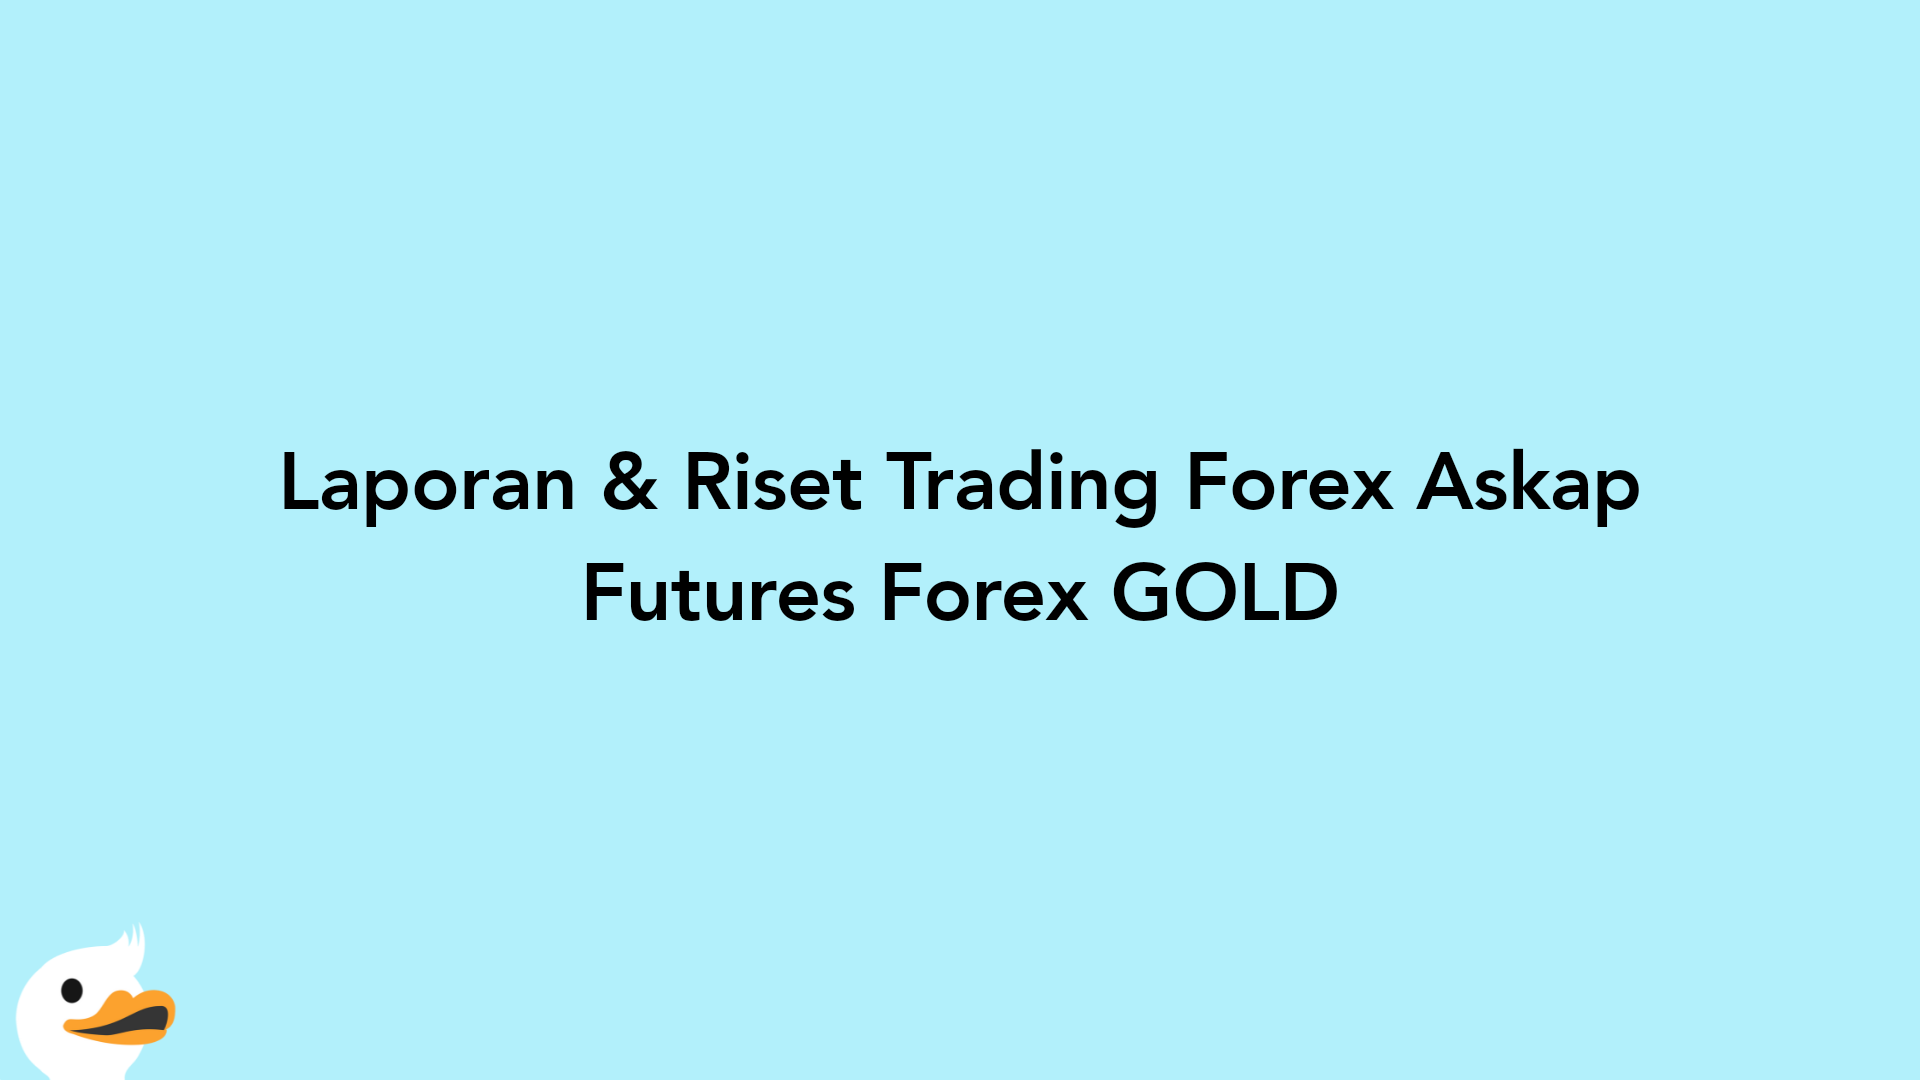 Laporan & Riset Trading Forex Askap Futures Forex GOLD